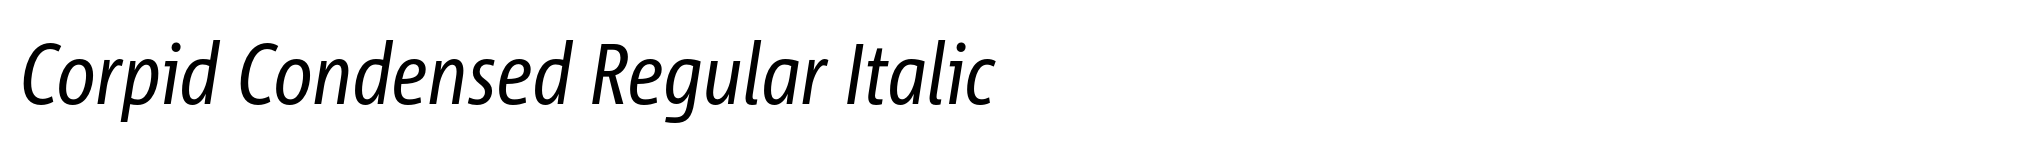 Corpid Condensed Regular Italic image